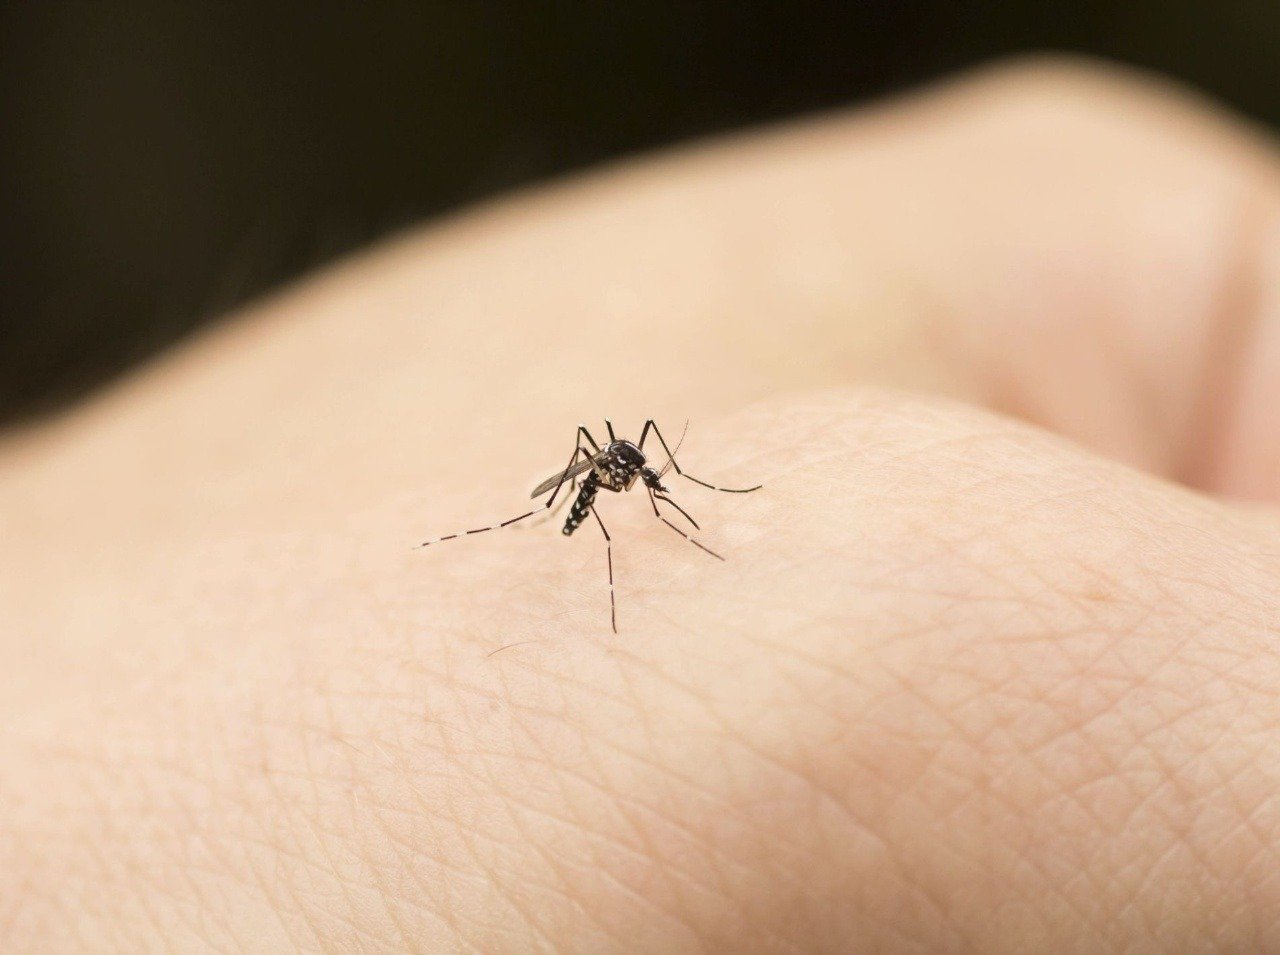 Uštipnutie komárom je nepríjemné, pokožka svrbí a bolí.